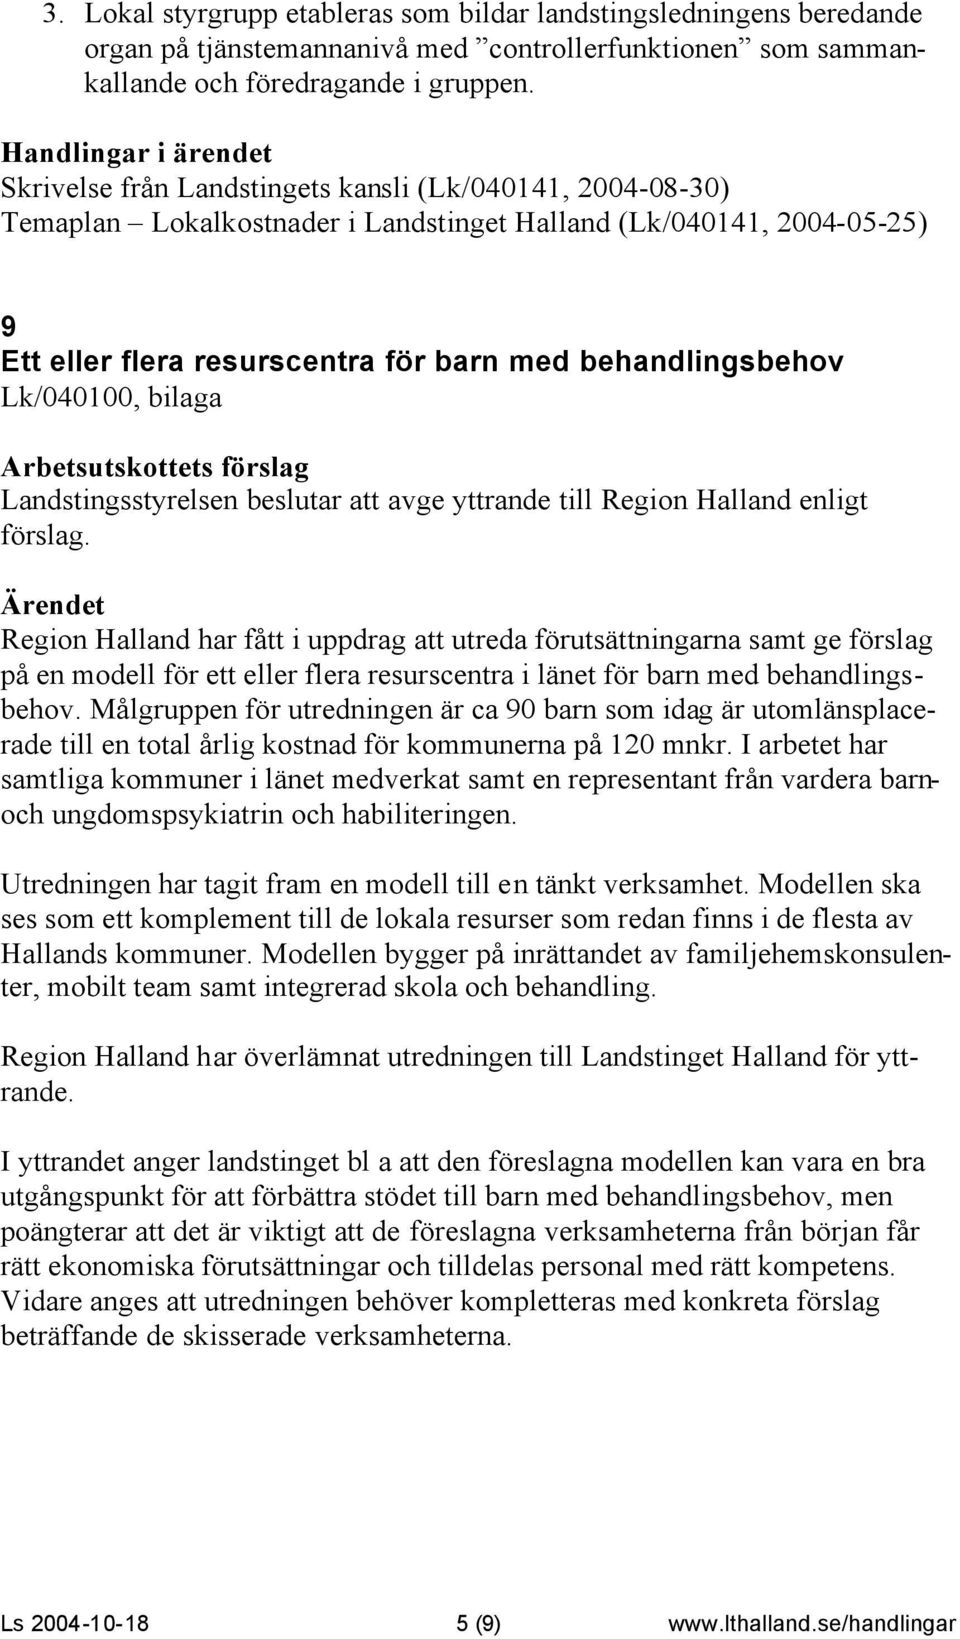 Lk/040100, bilaga Landstingsstyrelsen beslutar att avge yttrande till Region Halland enligt förslag.